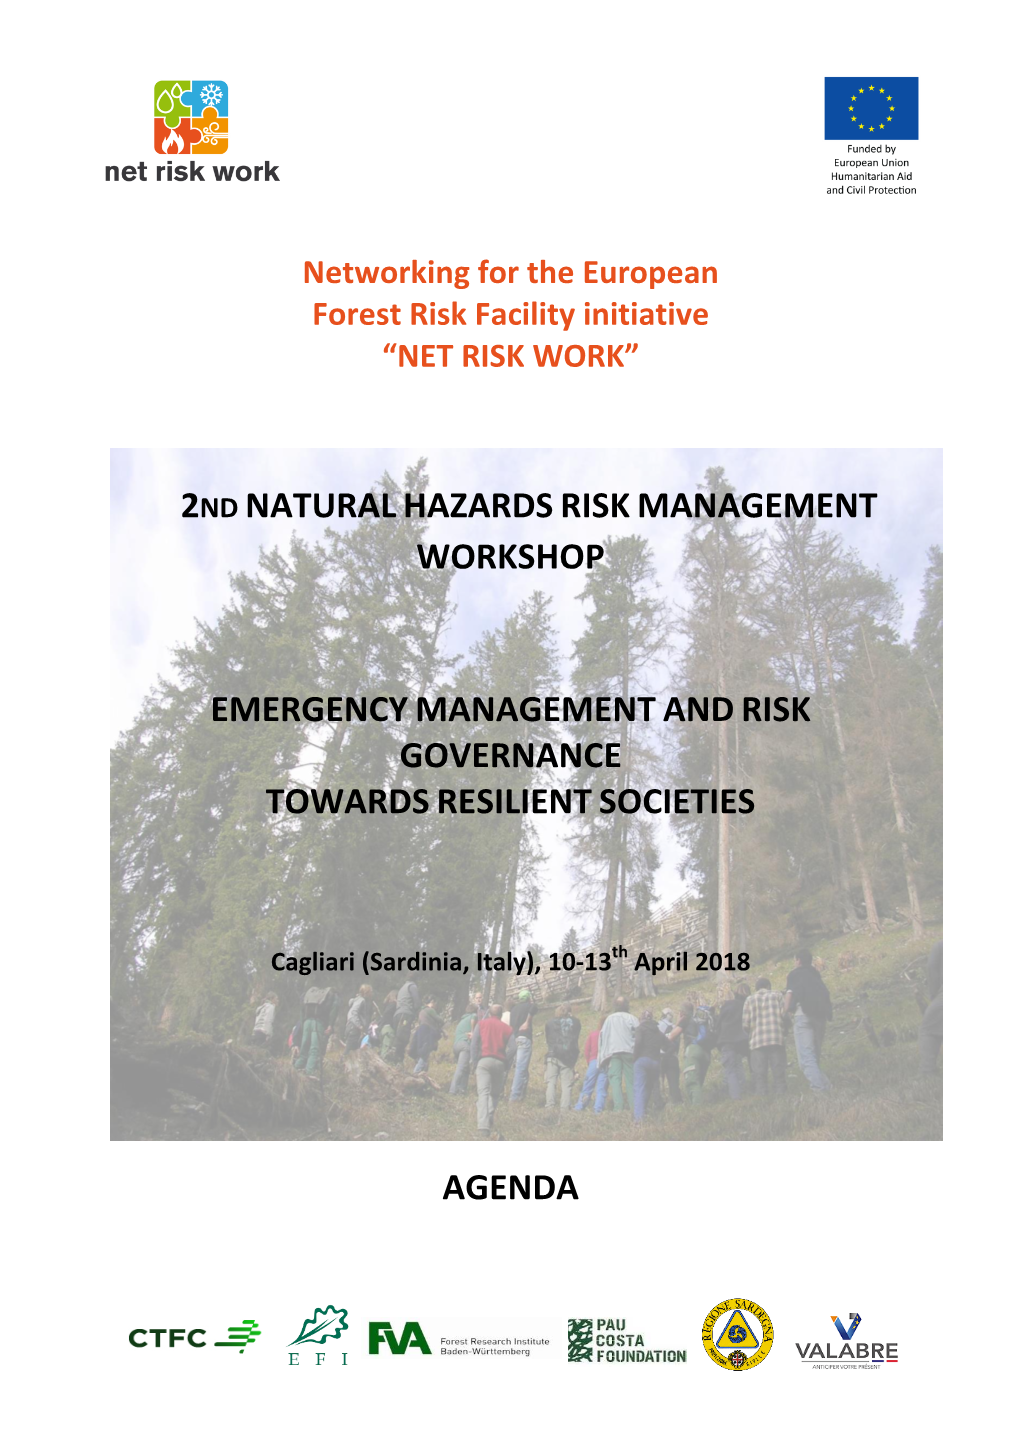 2Nd Naturalhazards Risk Management Workshop